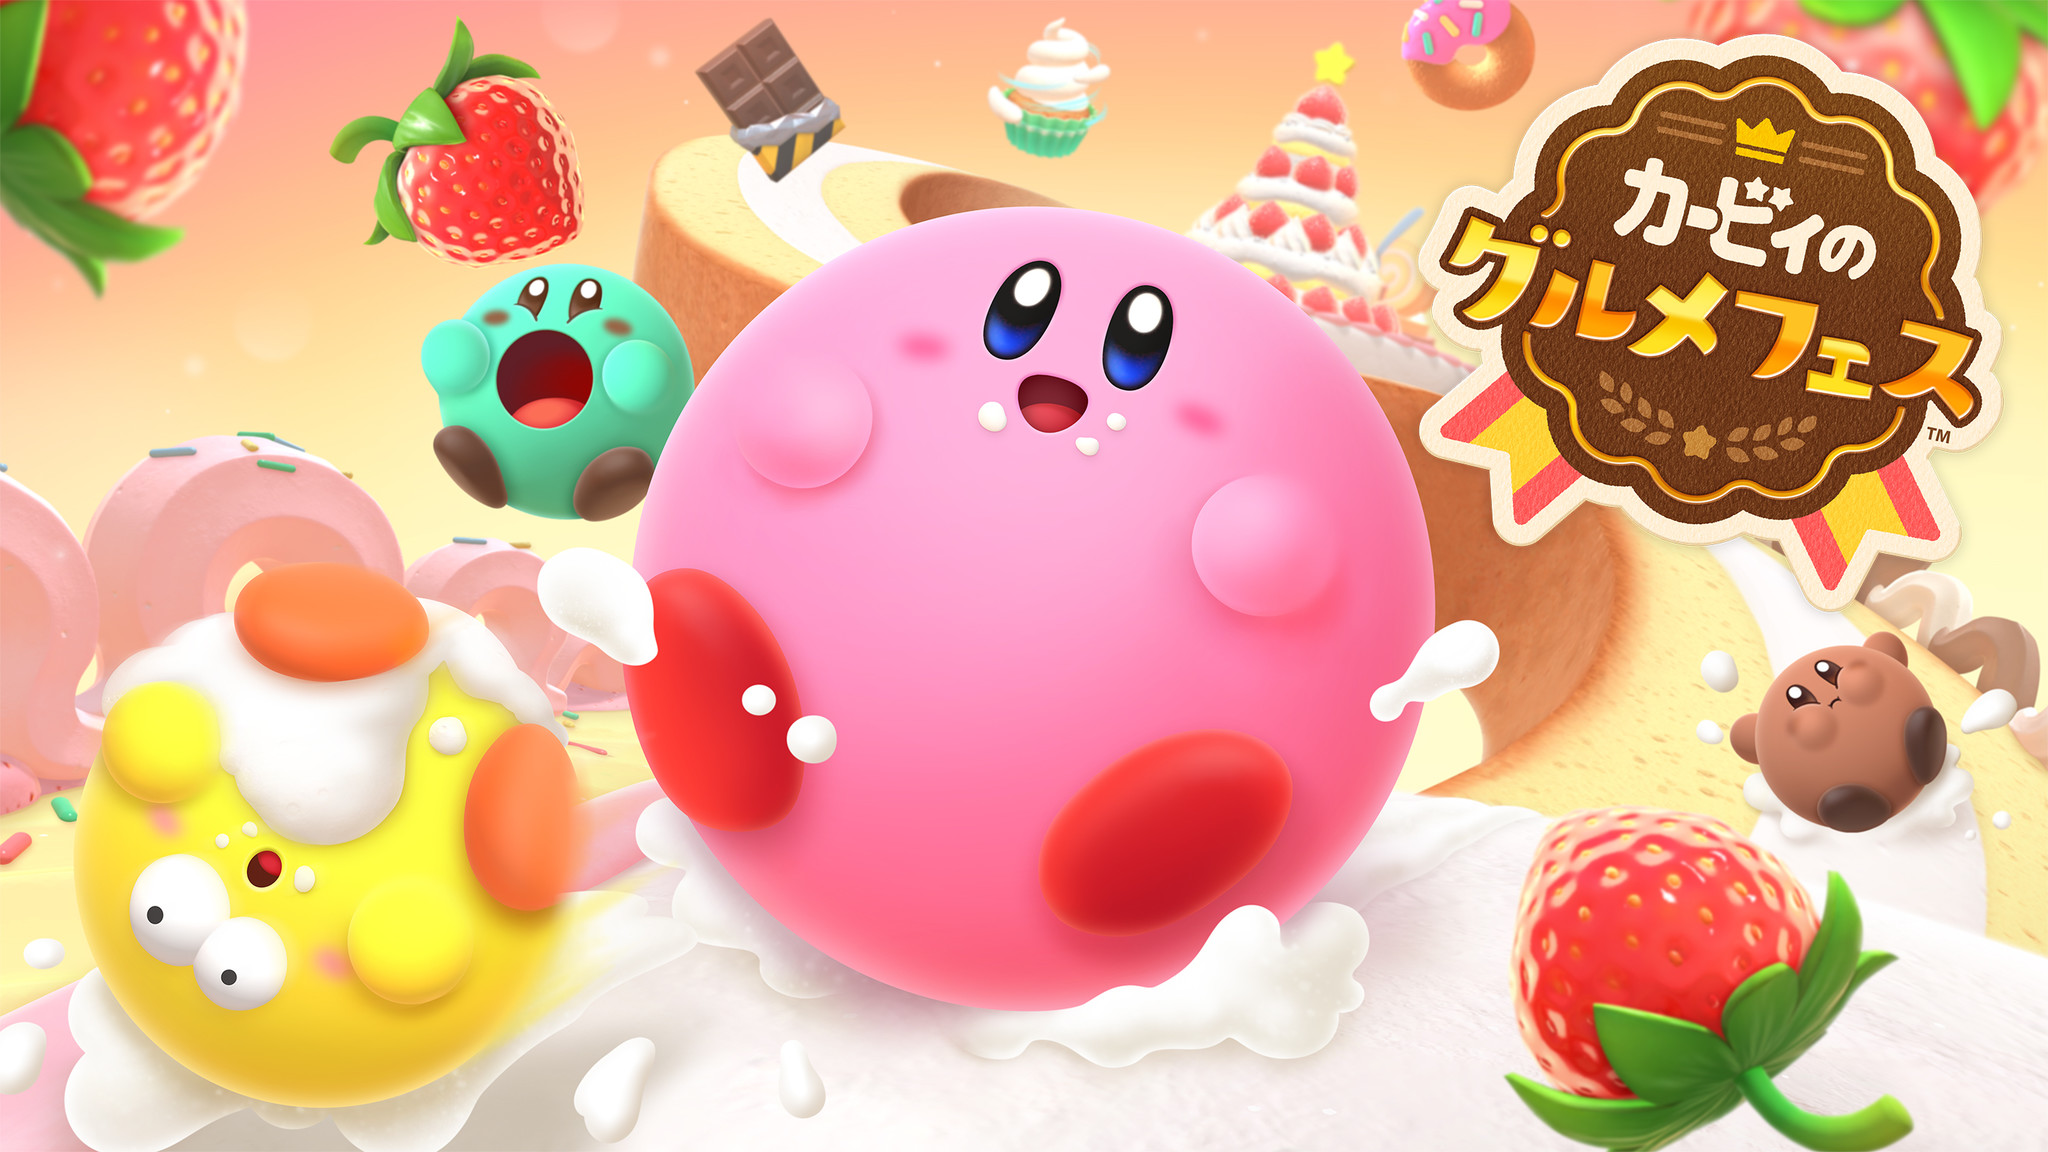 星のカービィの Kirby Cafe カービィカフェ ゲーム最新作 カービィ のグルメフェス をモチーフにした期間限定デザートを9月1日より全店で提供開始 ベネリック株式会社のプレスリリース